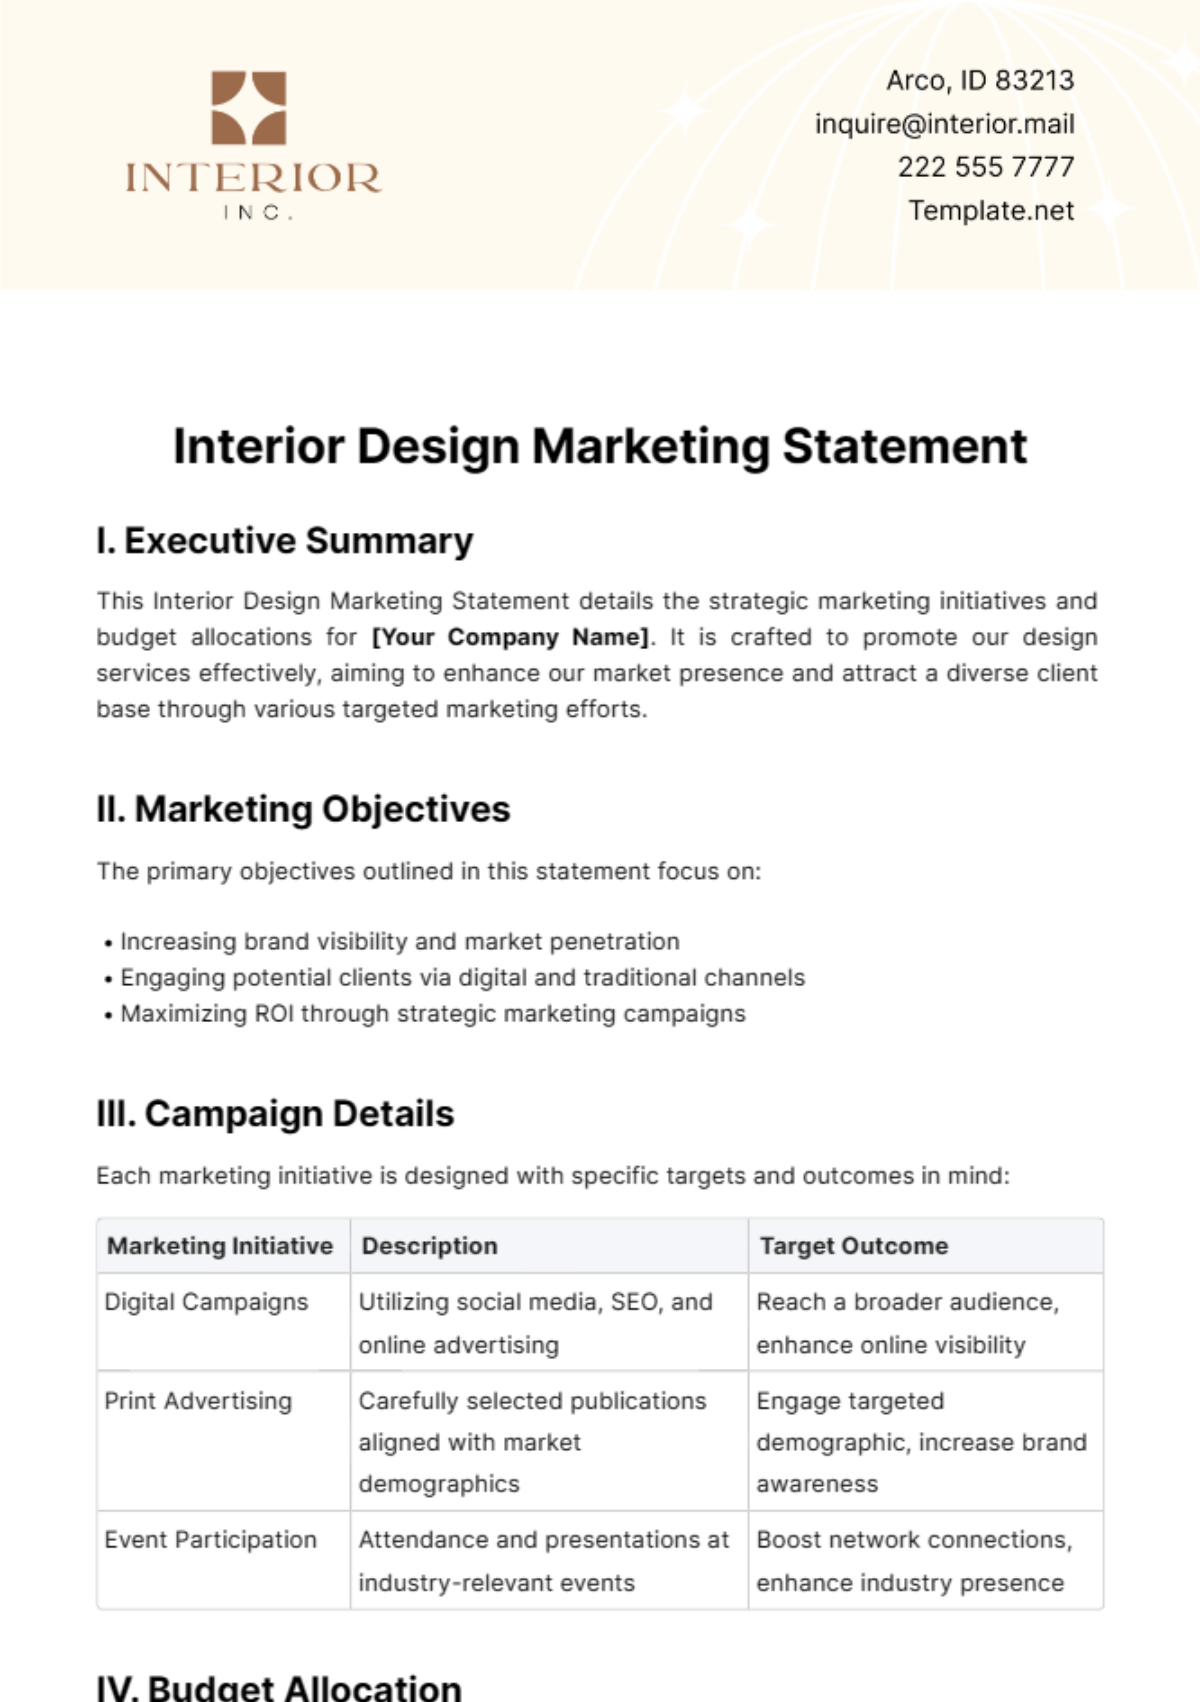 Free Interior Design Marketing Statement Template